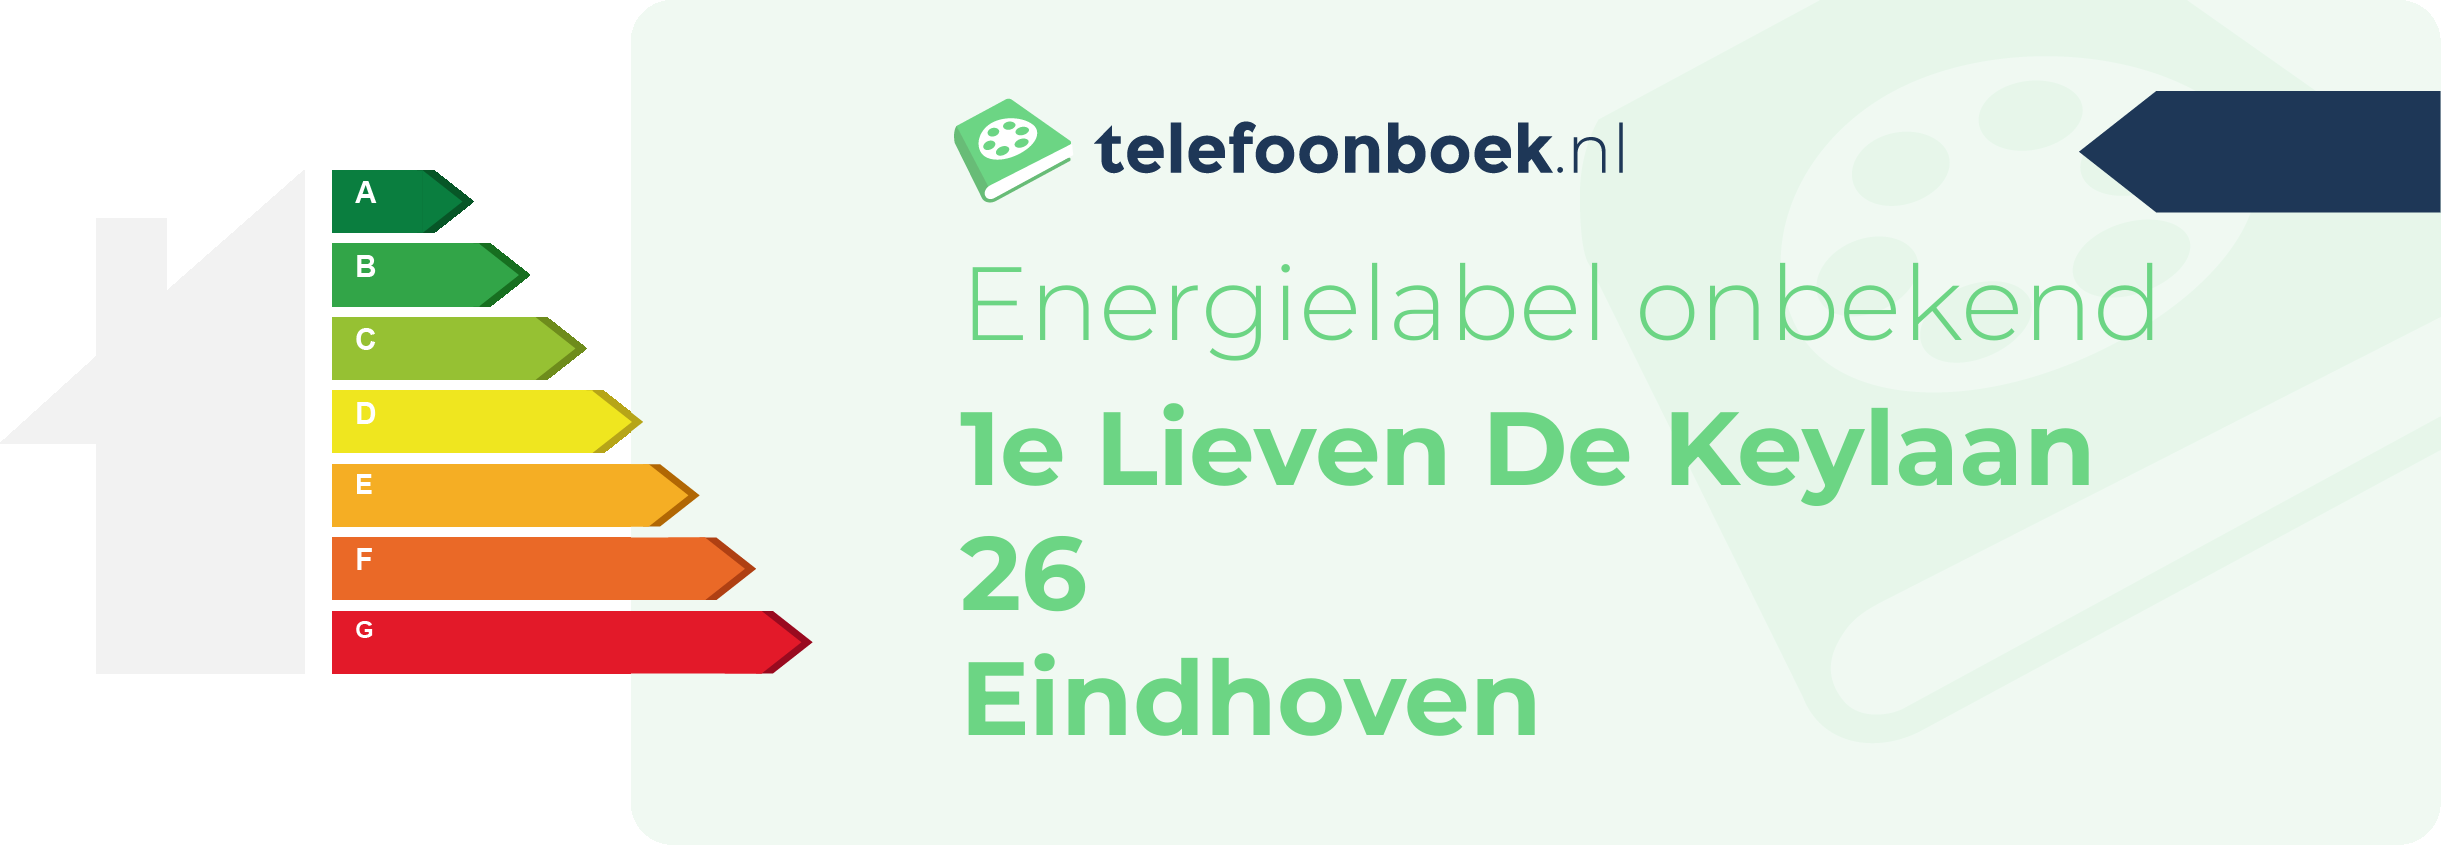 Energielabel 1e Lieven De Keylaan 26 Eindhoven